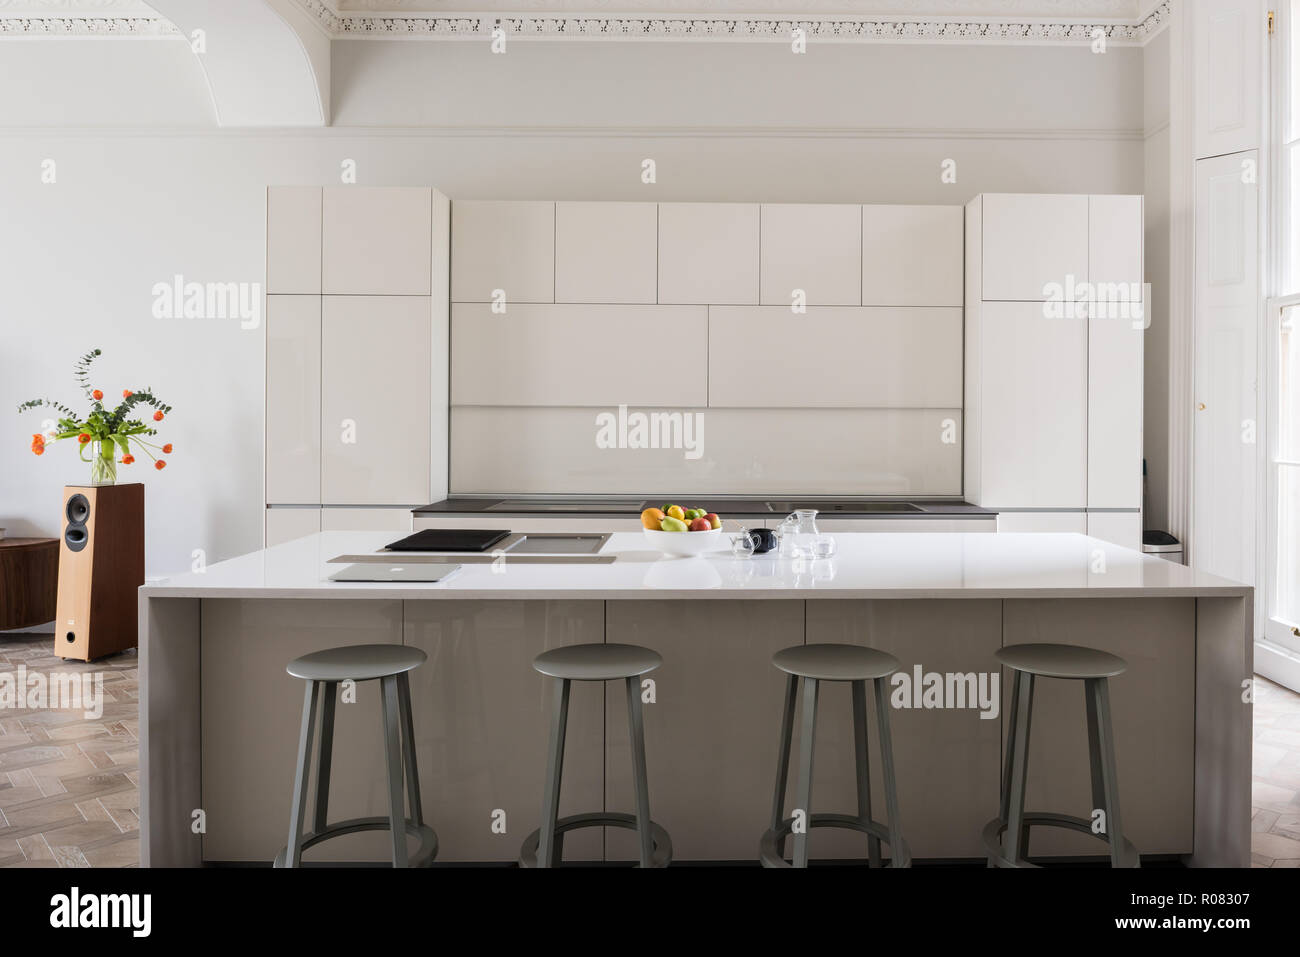 White kitchen with stools Stock Photo